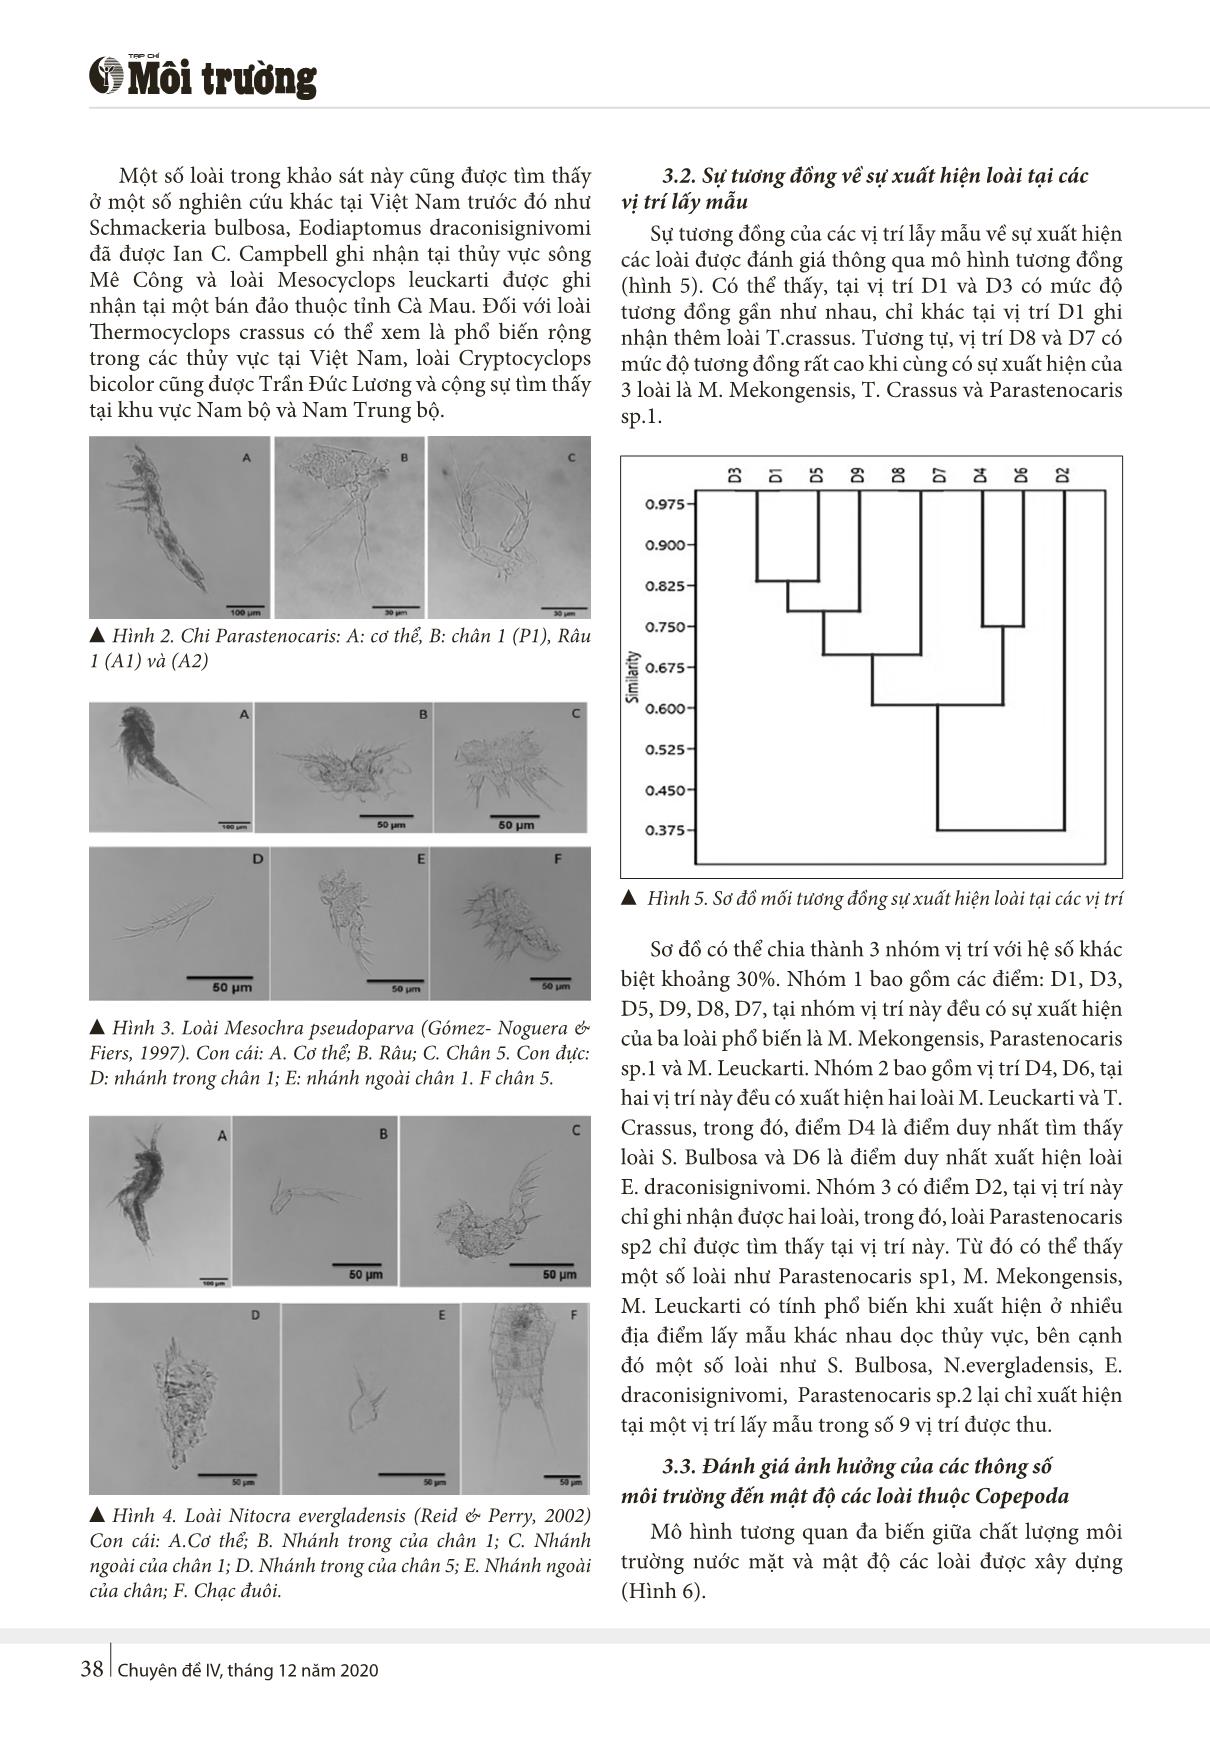 Nghiên cứu thành phần phân lớp giáp xác chân chèo (Copepoda) tại sông Vu Gia - Thu Bồn, Quảng Nam trang 3